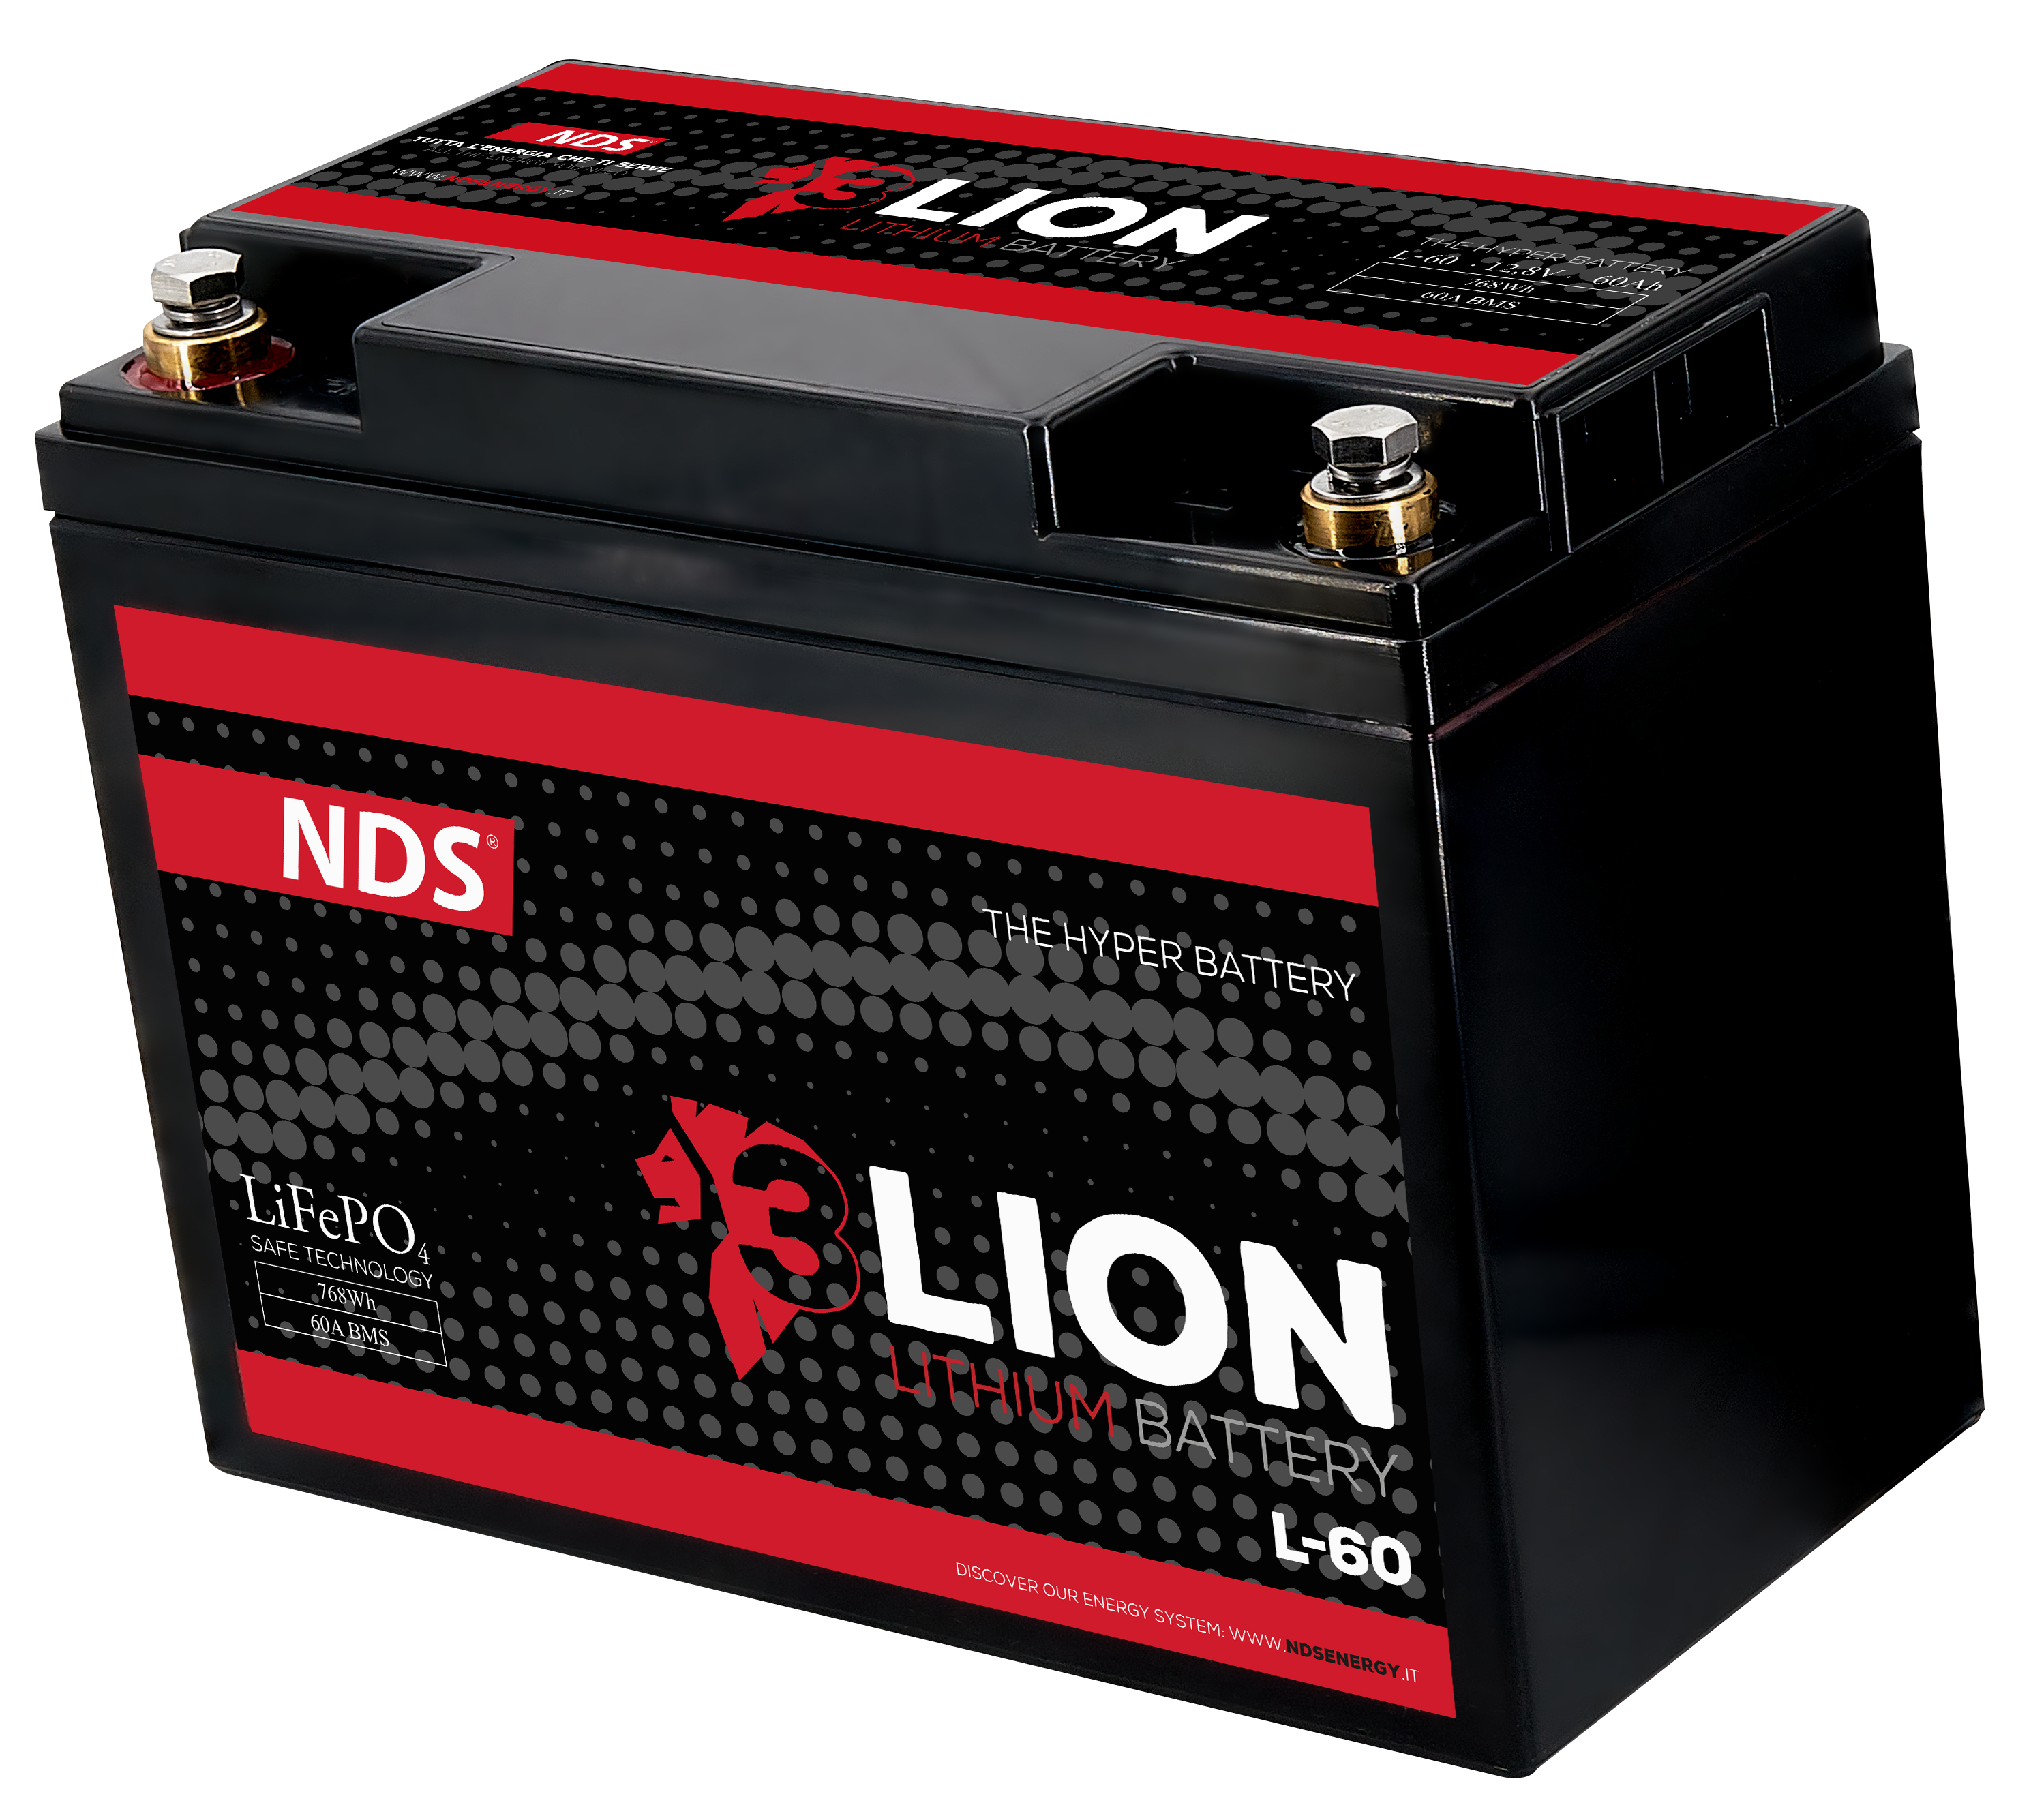 Batterie Lithium 3 Lion - 60 Ah - 3LION - batterie Lithium